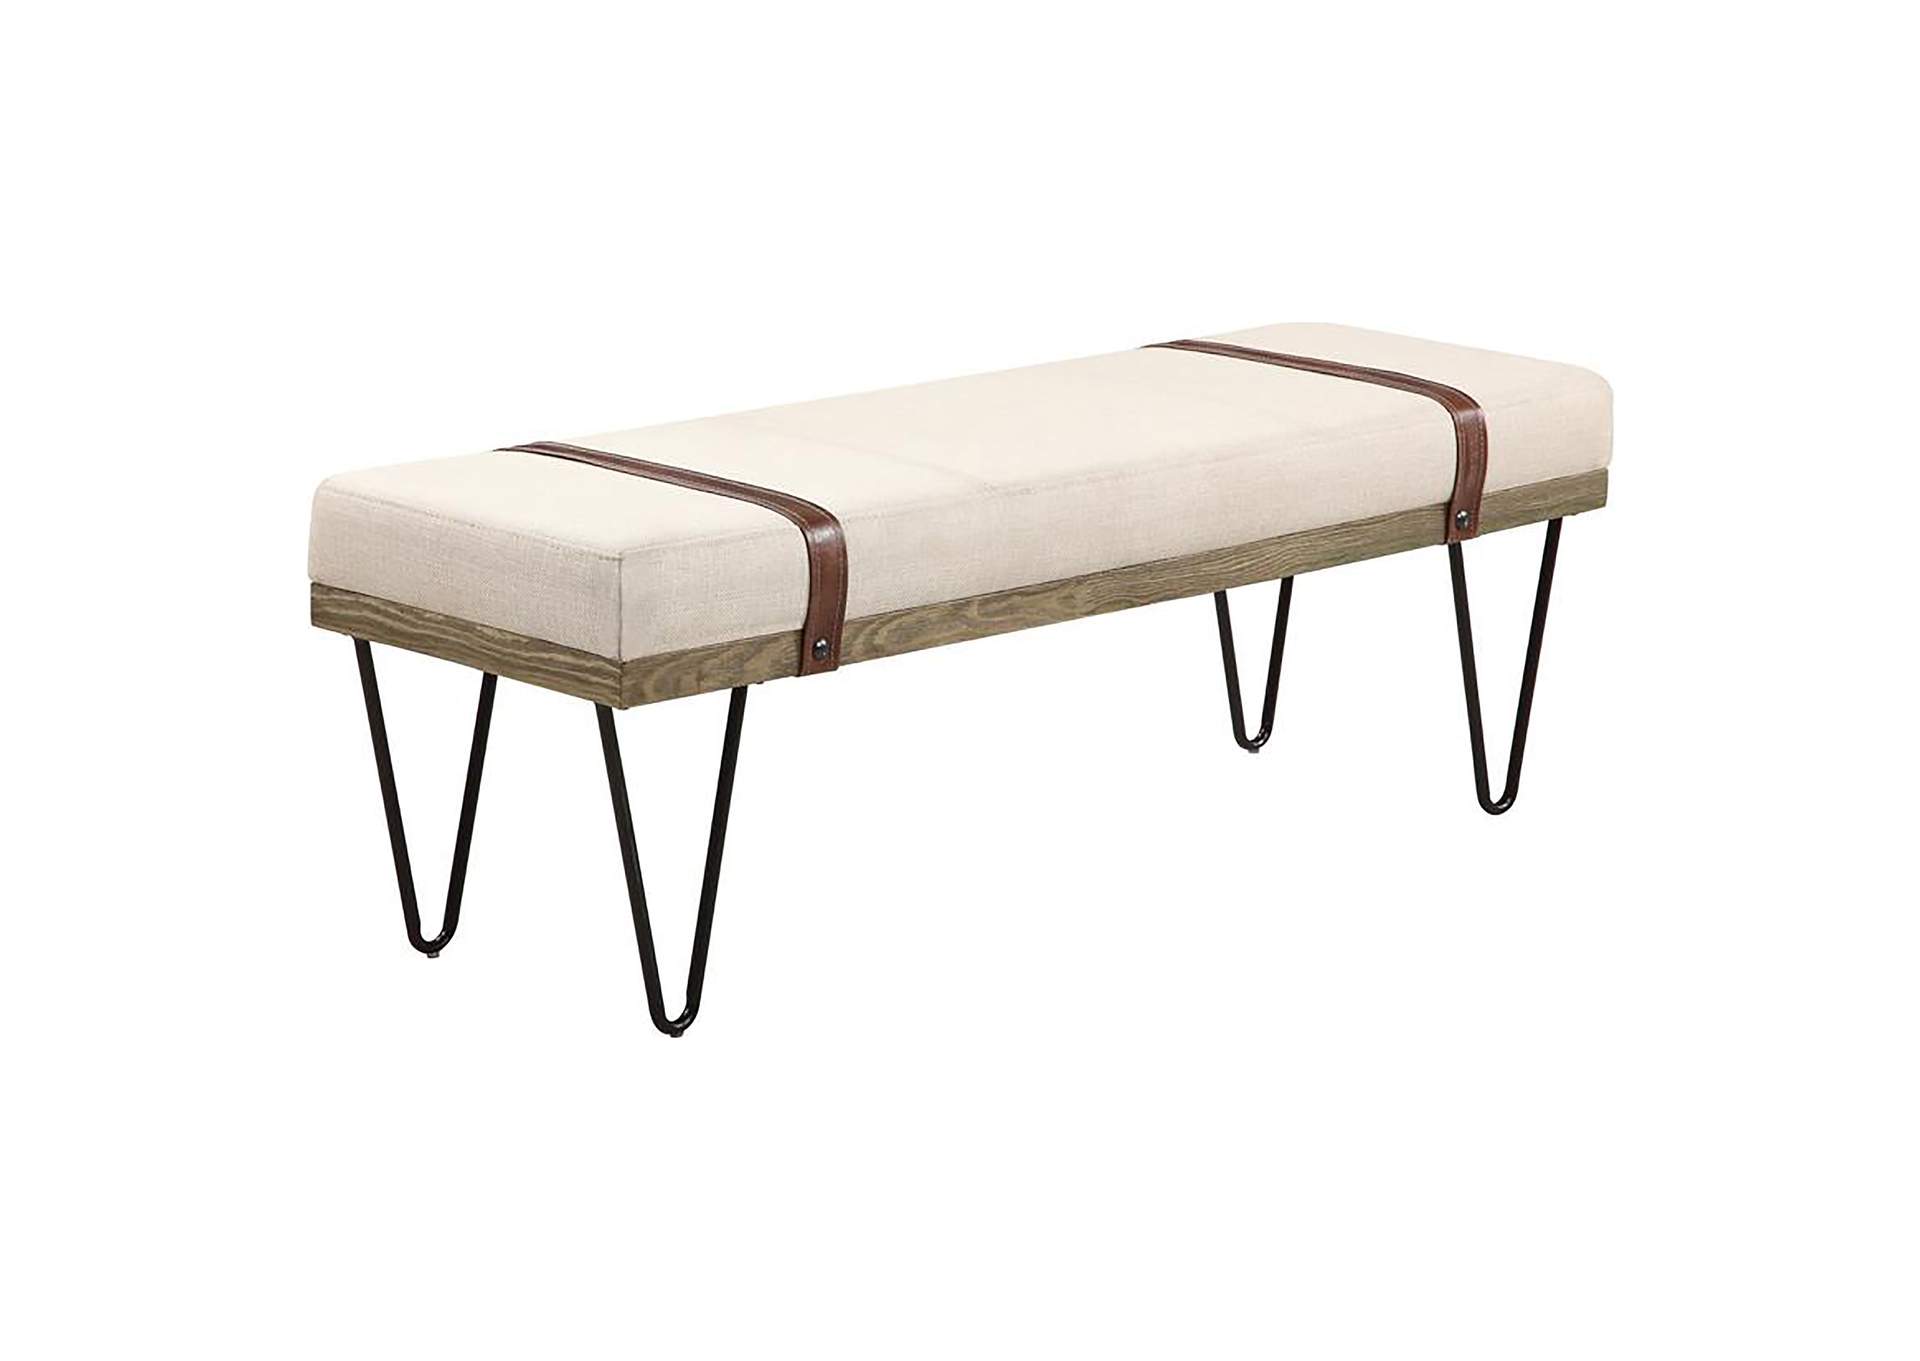 Austin Upholstered Bench Beige and Black,Coaster Furniture